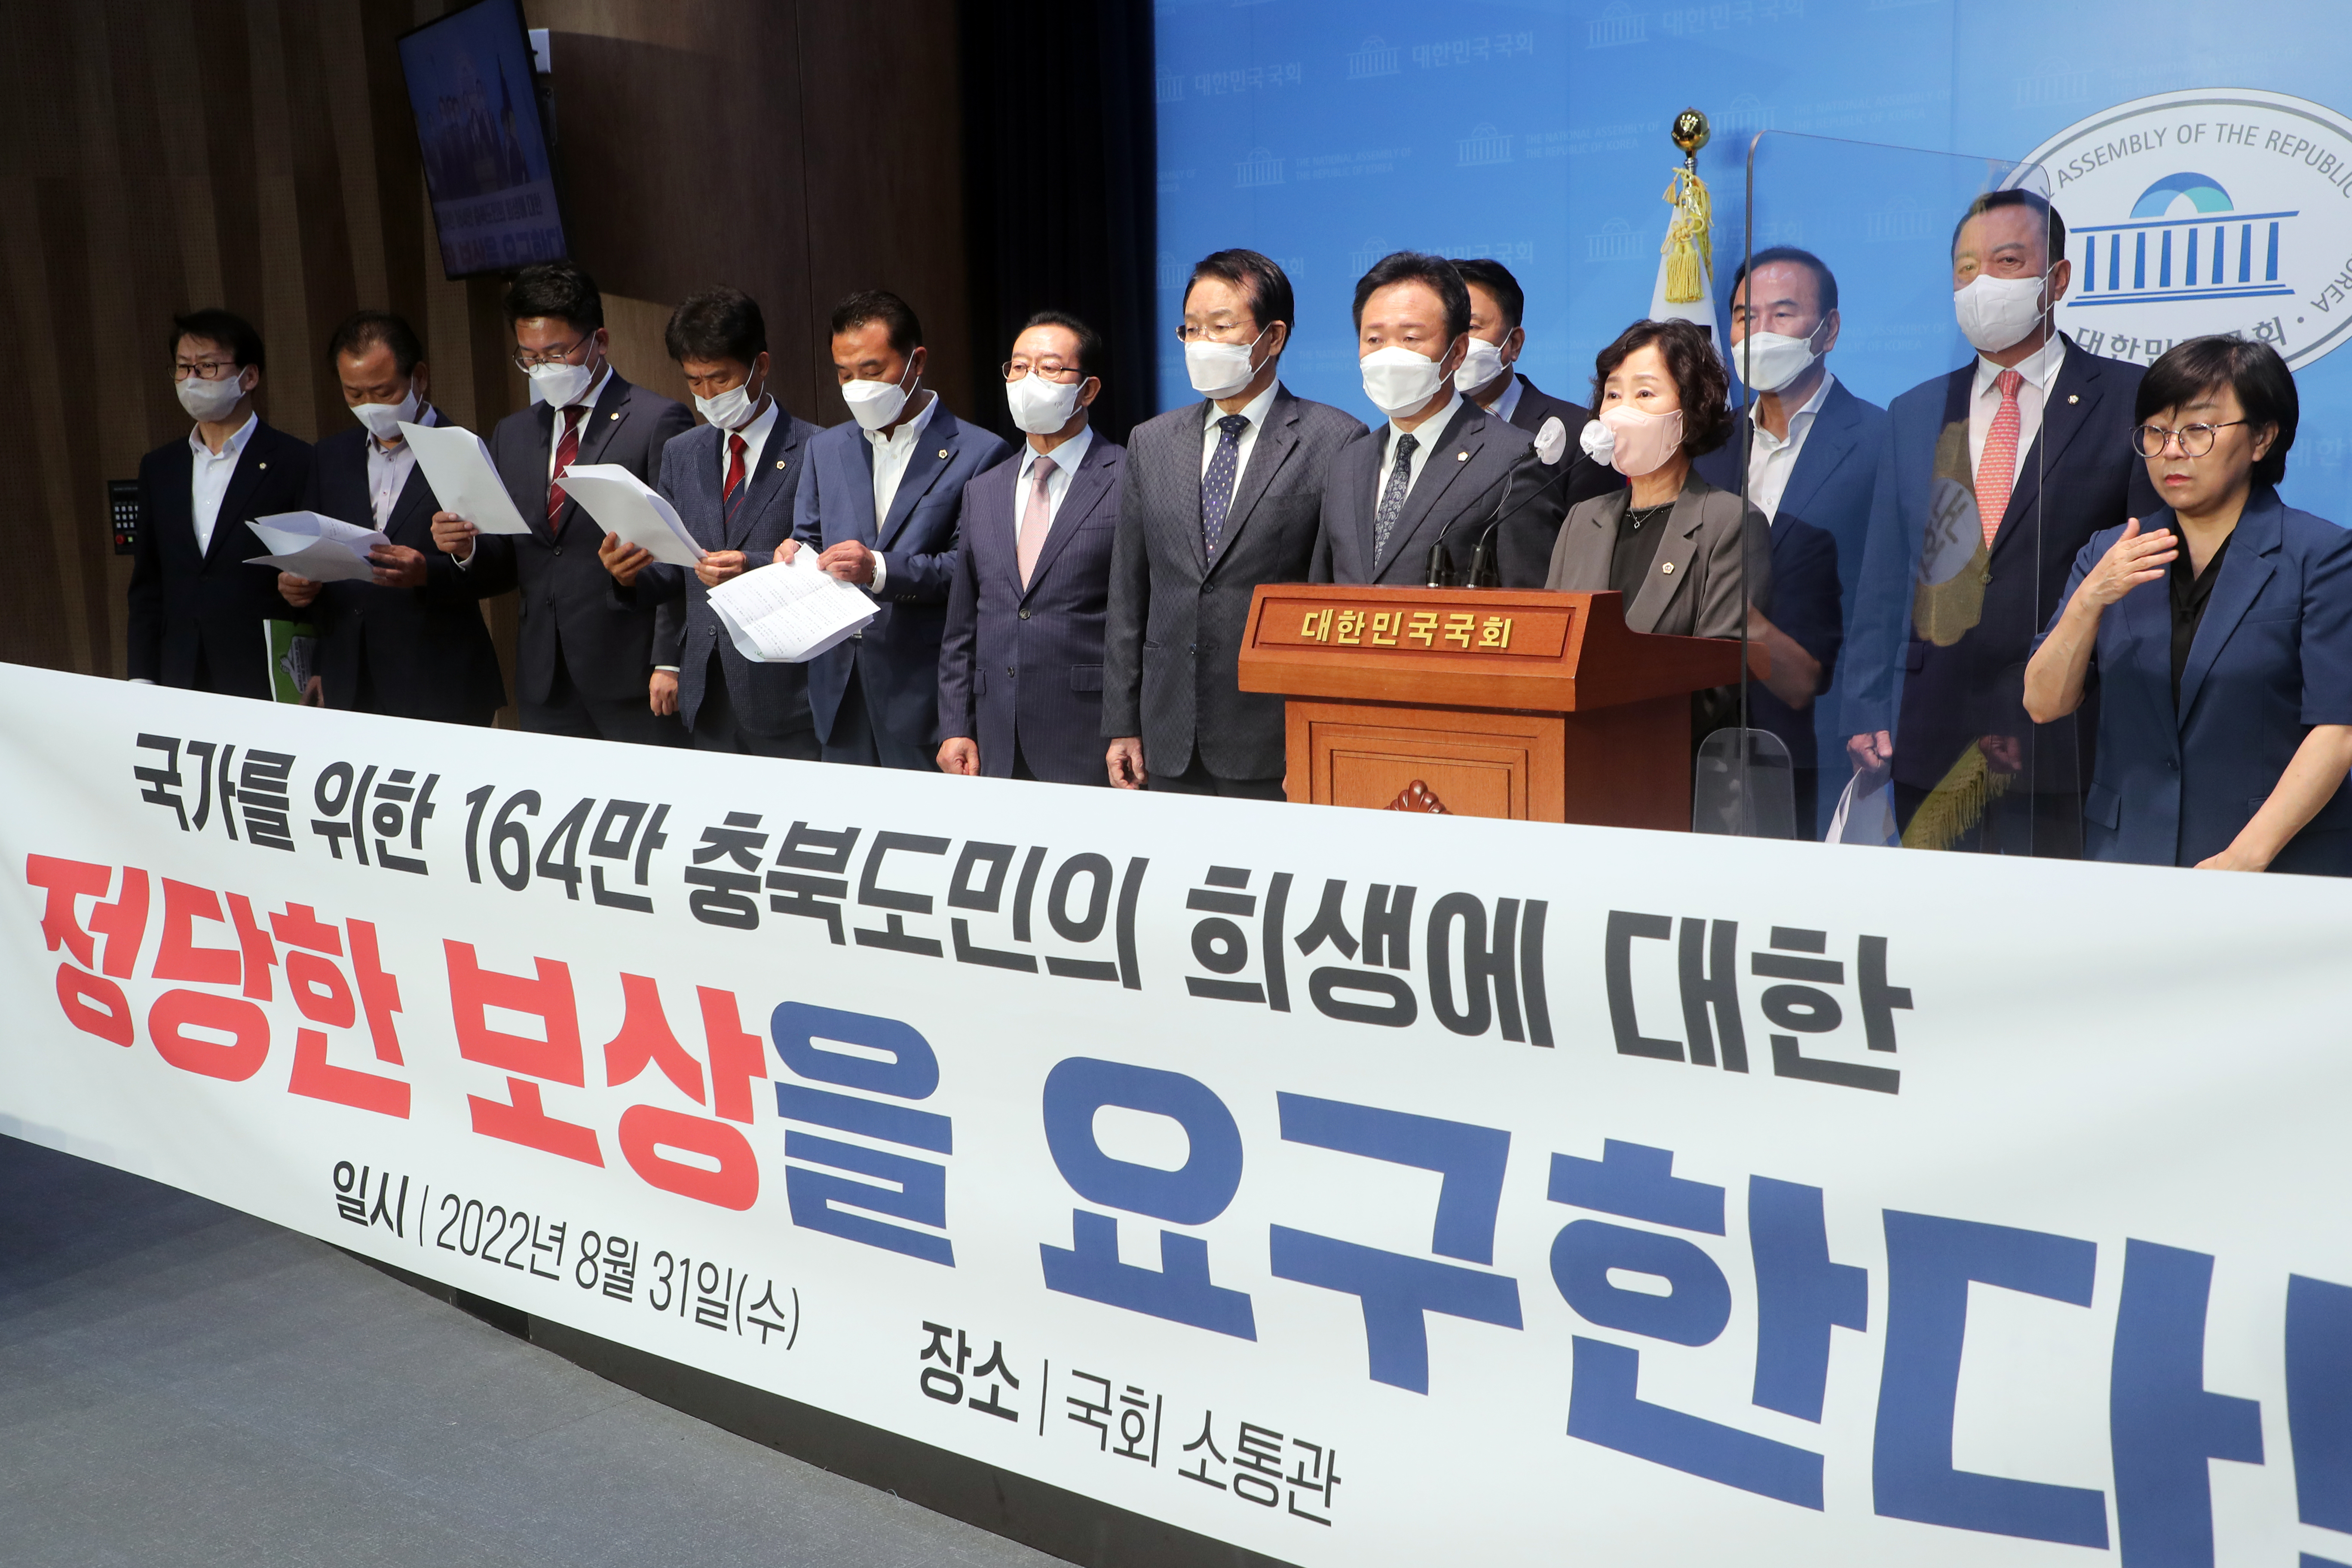 20220831 - 충북도민의 염원을 담은 대정부 성명서 발표(국회)